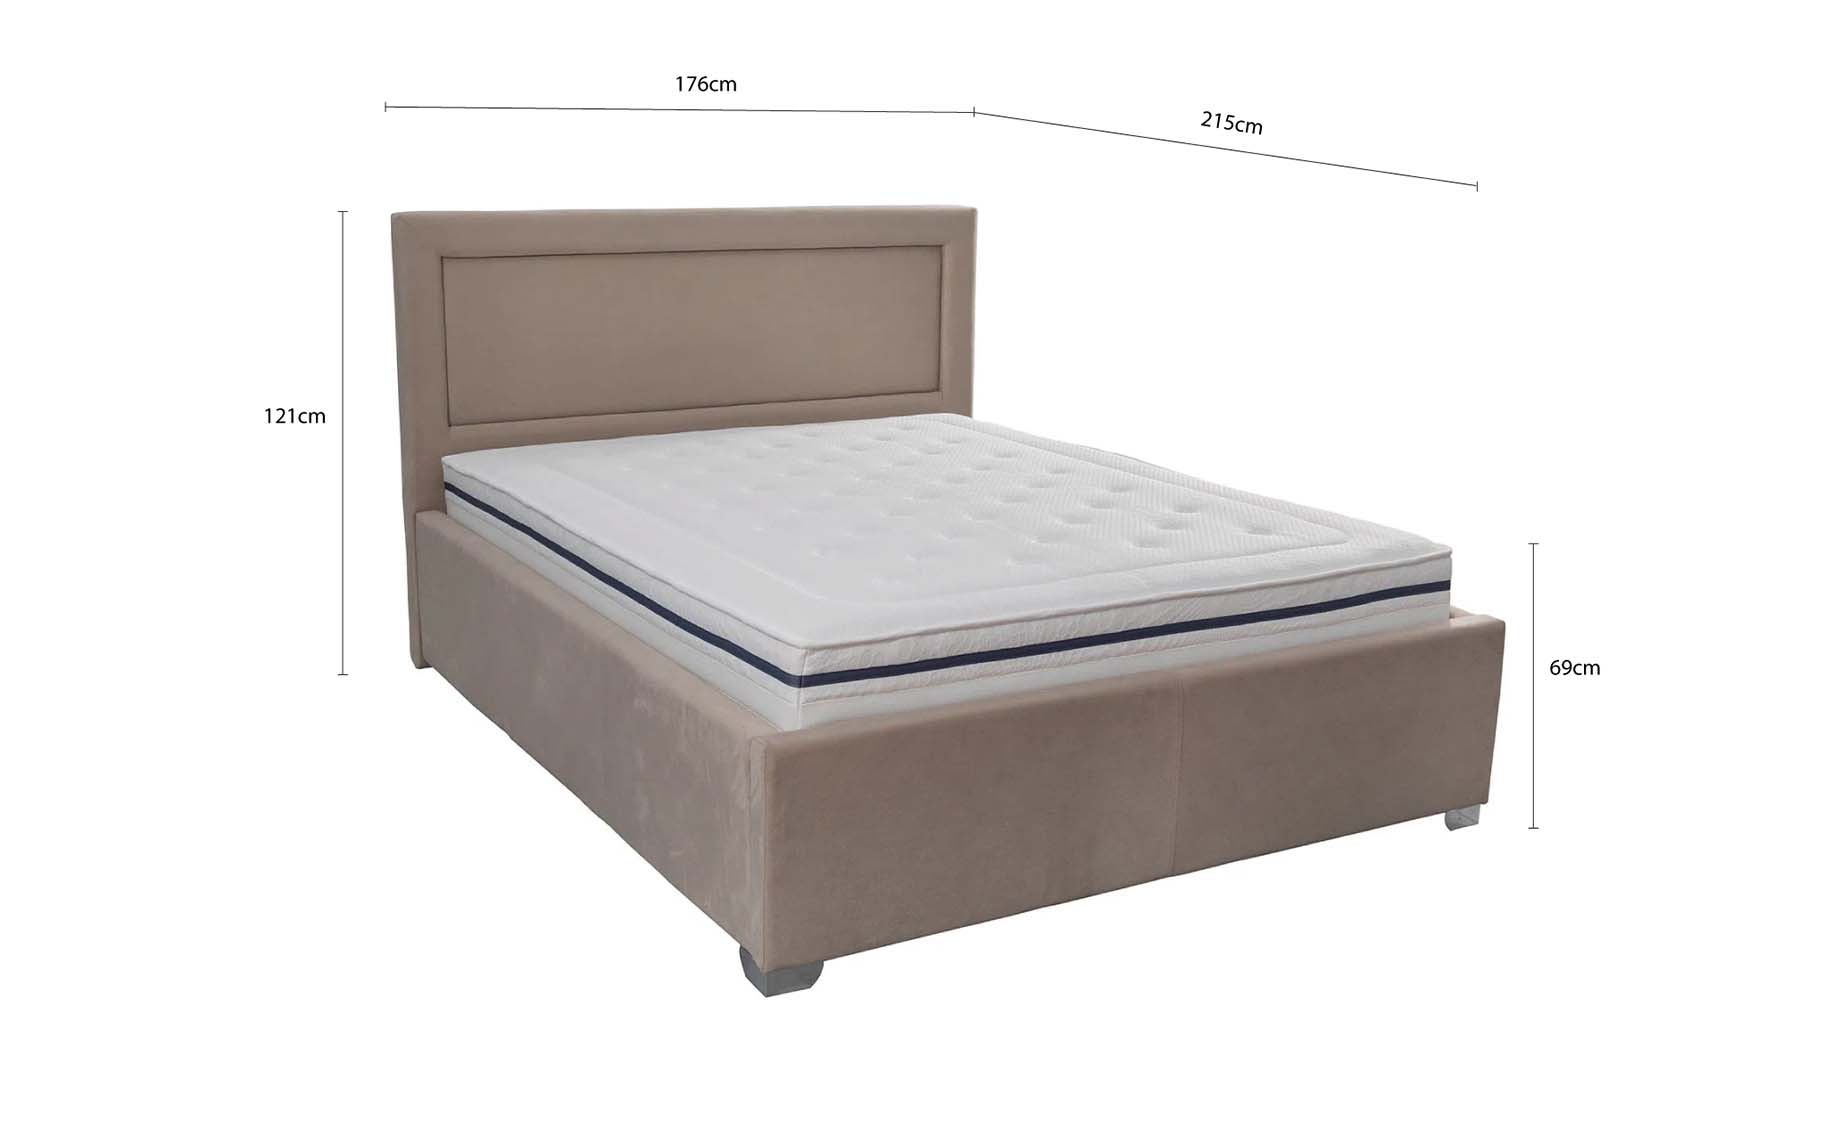 Pasadena krevet bez podnice 176x215x121cm